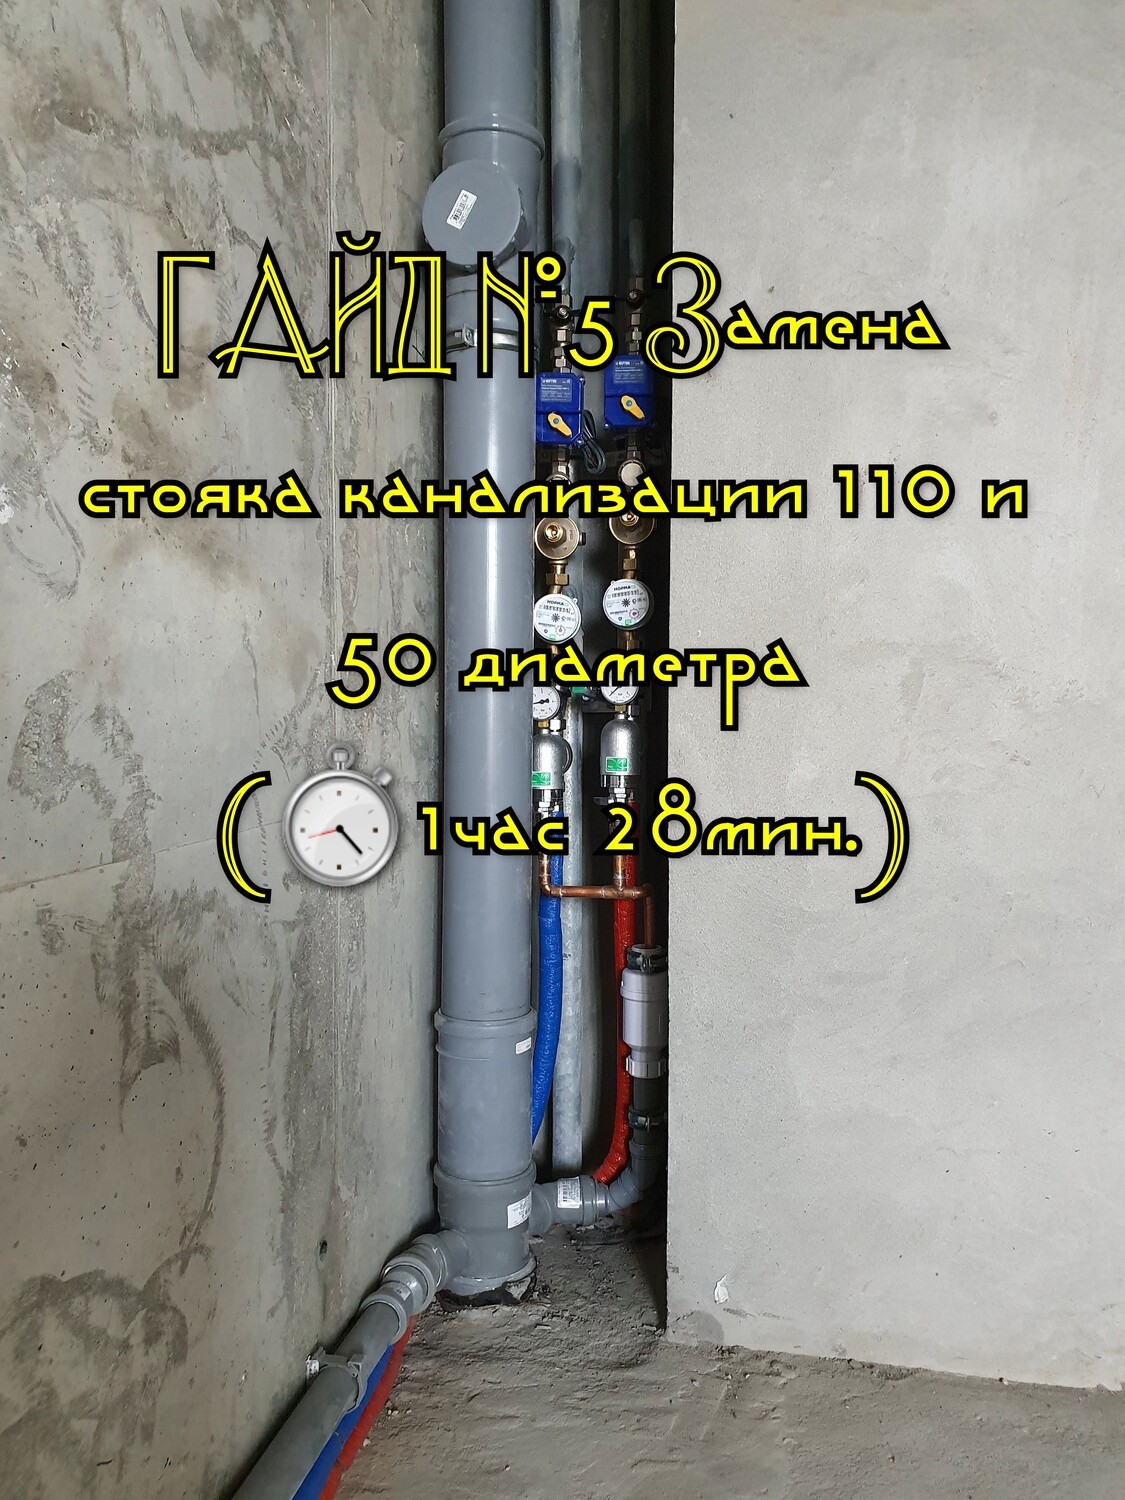 ГАЙД №5 Замена стояка канализации 110 и 50 диаметра (1час 28мин.)